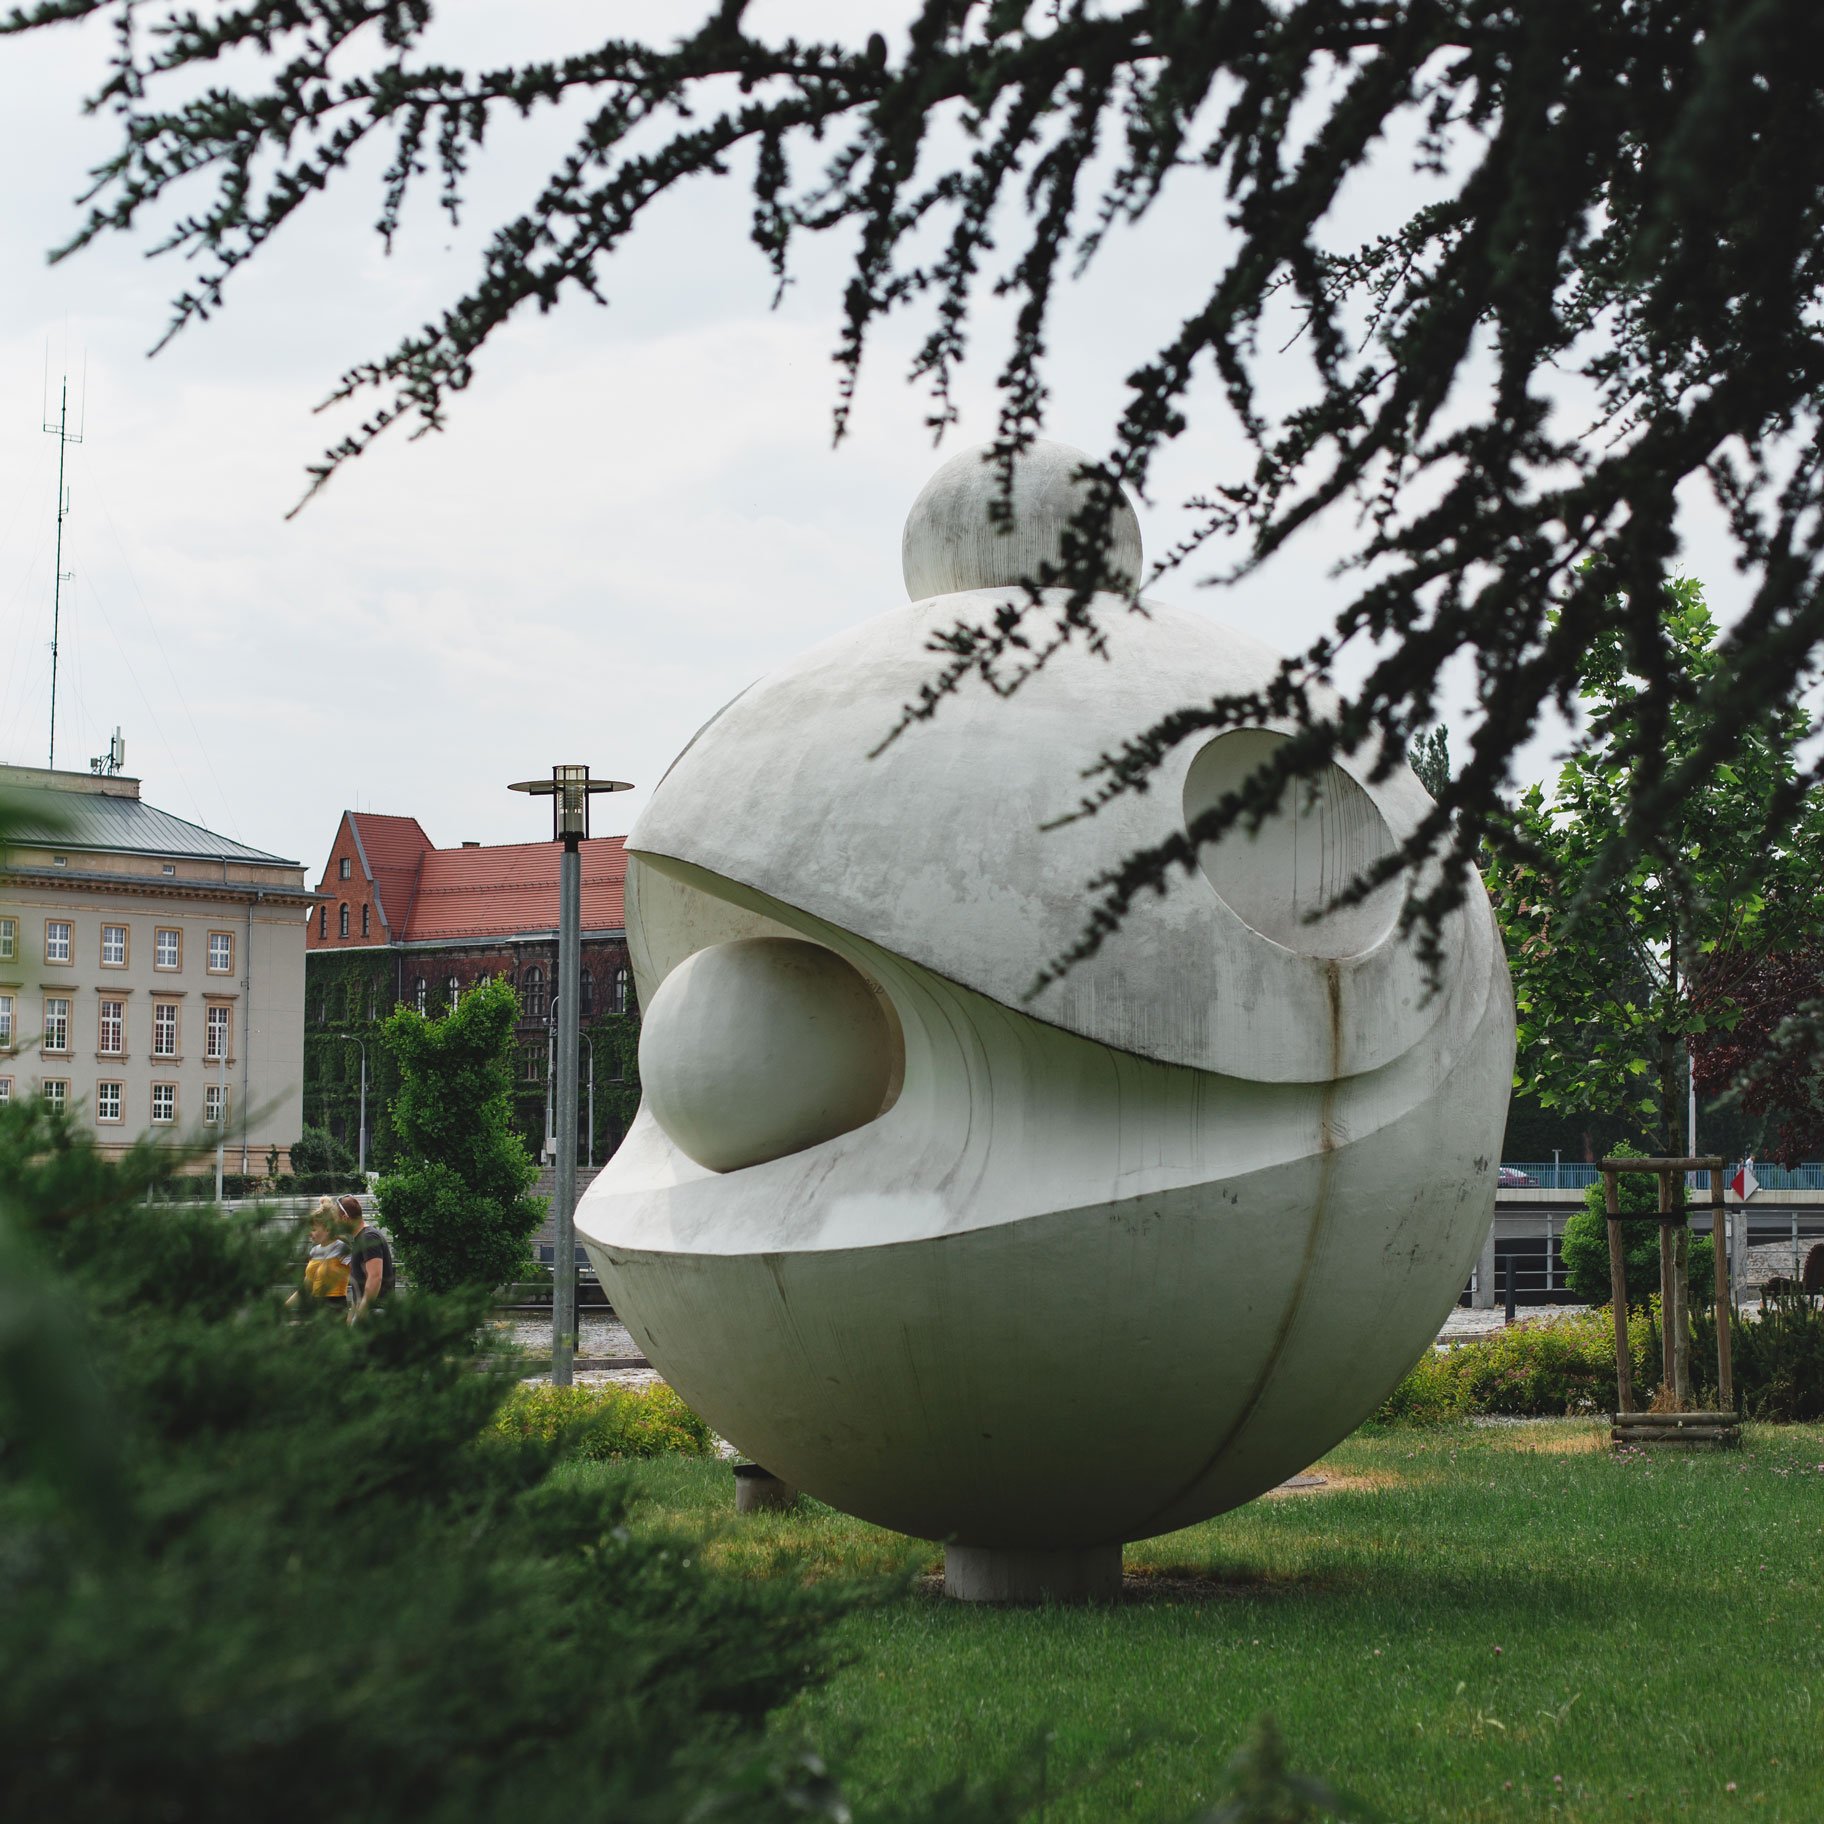 Na zdjęciu widać kamienną rzeźbę przedstawiająca model atomu, w tle widać budynki Muzeum Narodowego oraz Urzędu Wojewódzkiego. Na pierwszym planie widać rozmazane krzewy.